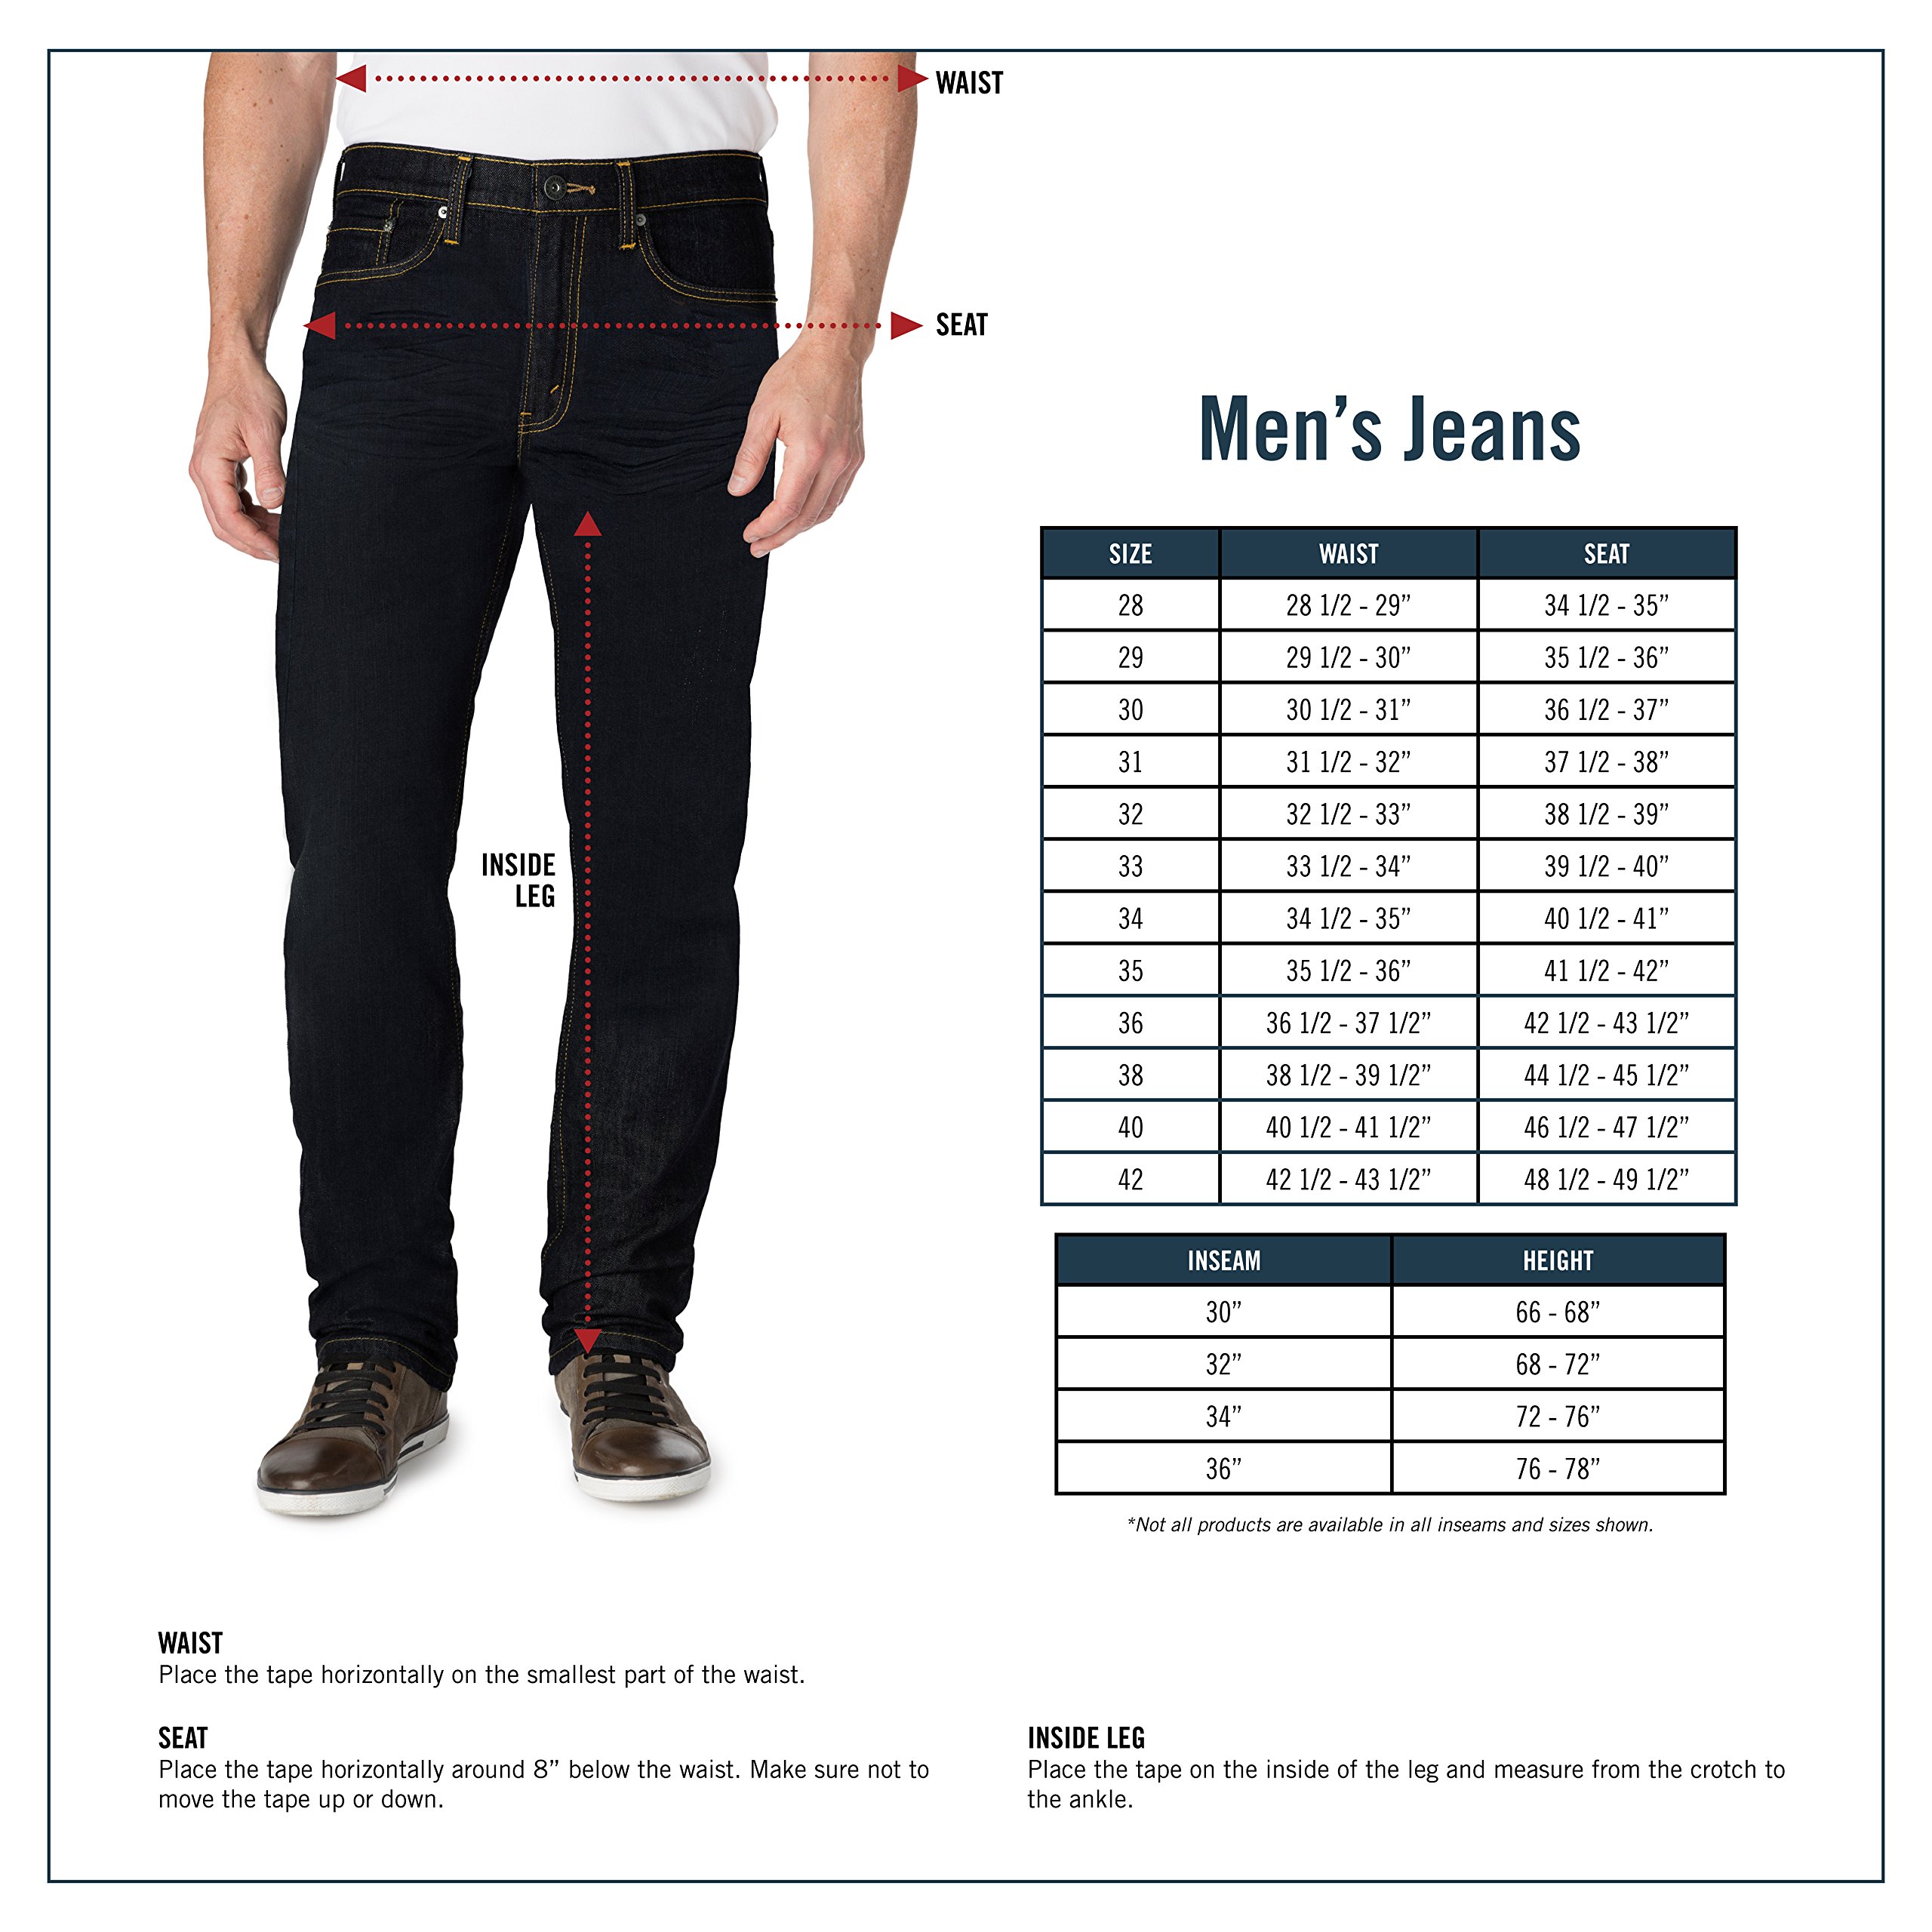 31 размер джинс это какой европейский мужской